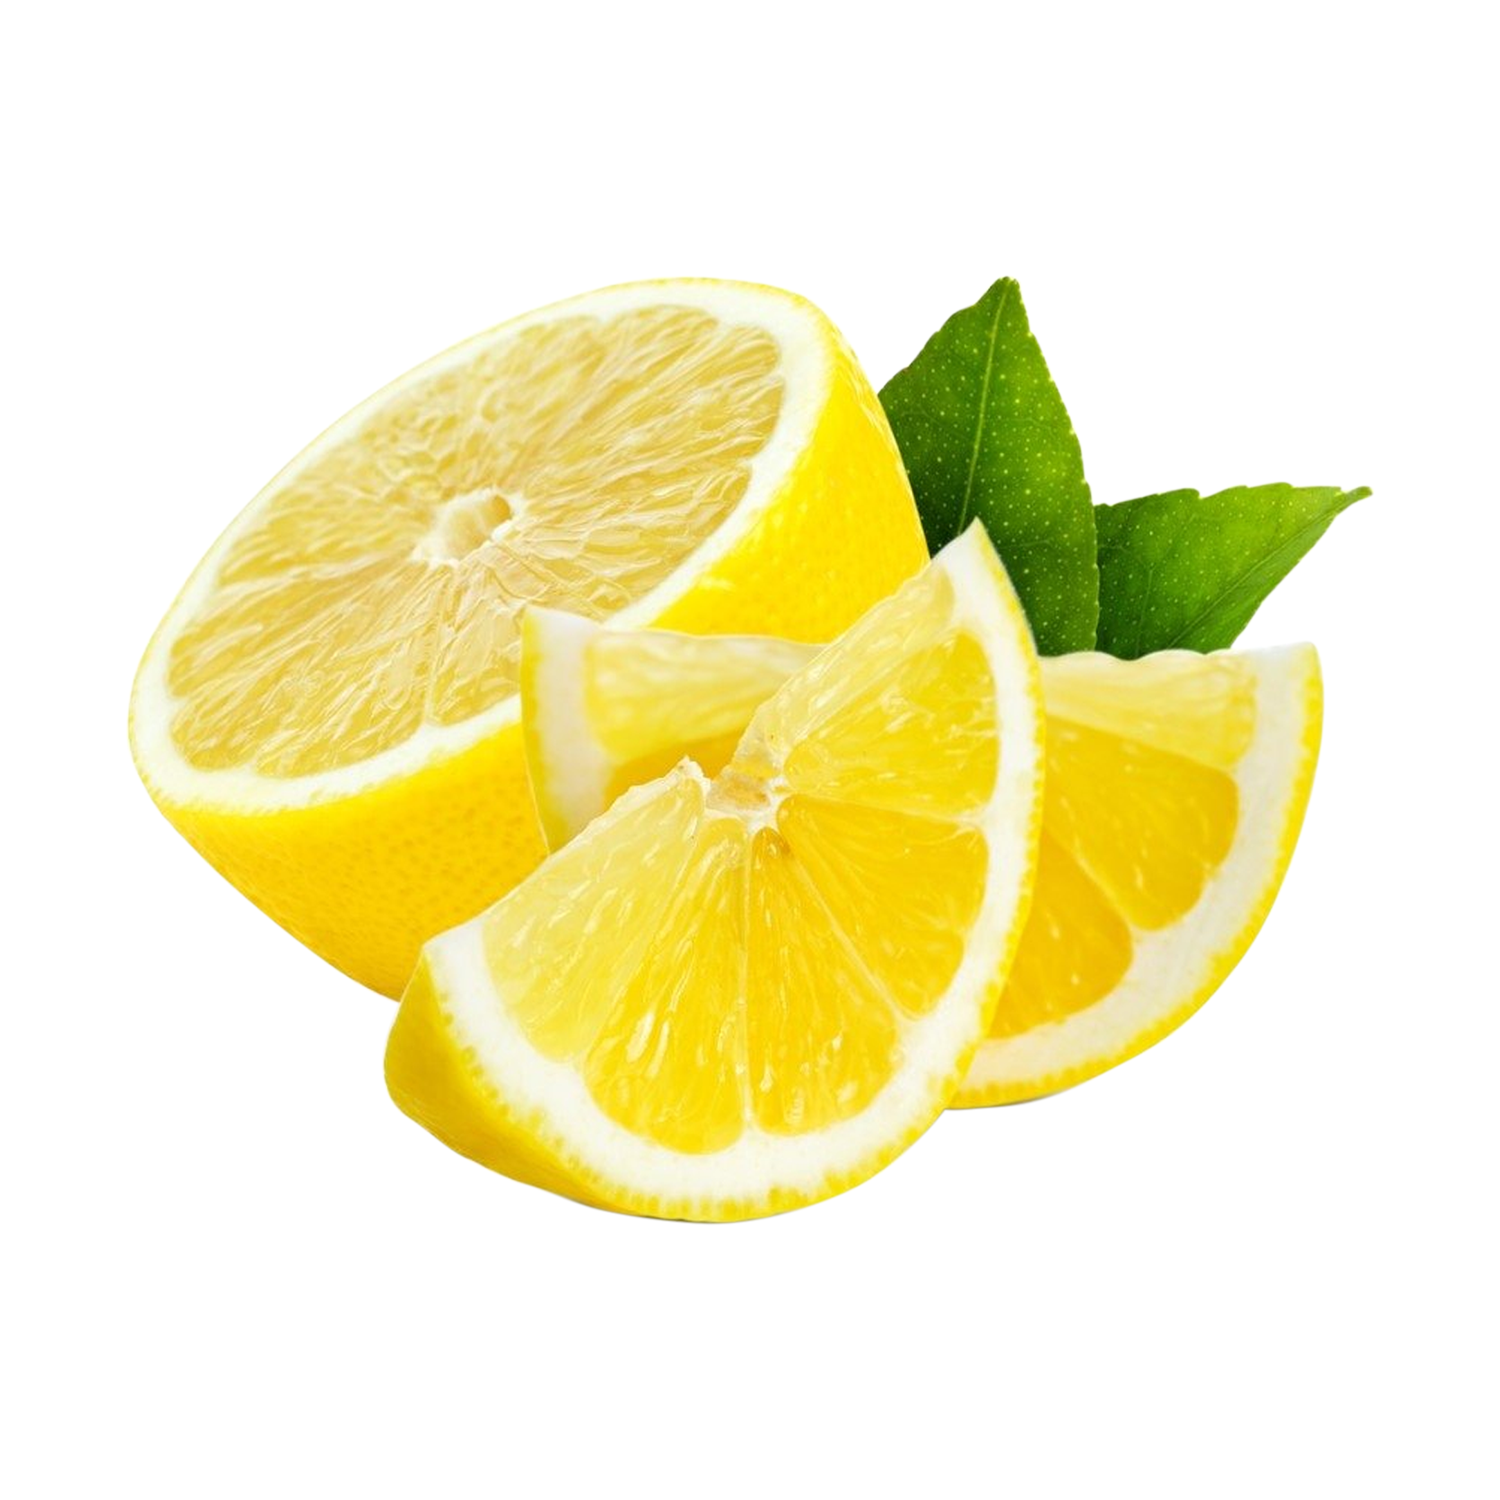 Ç-Limon Kg